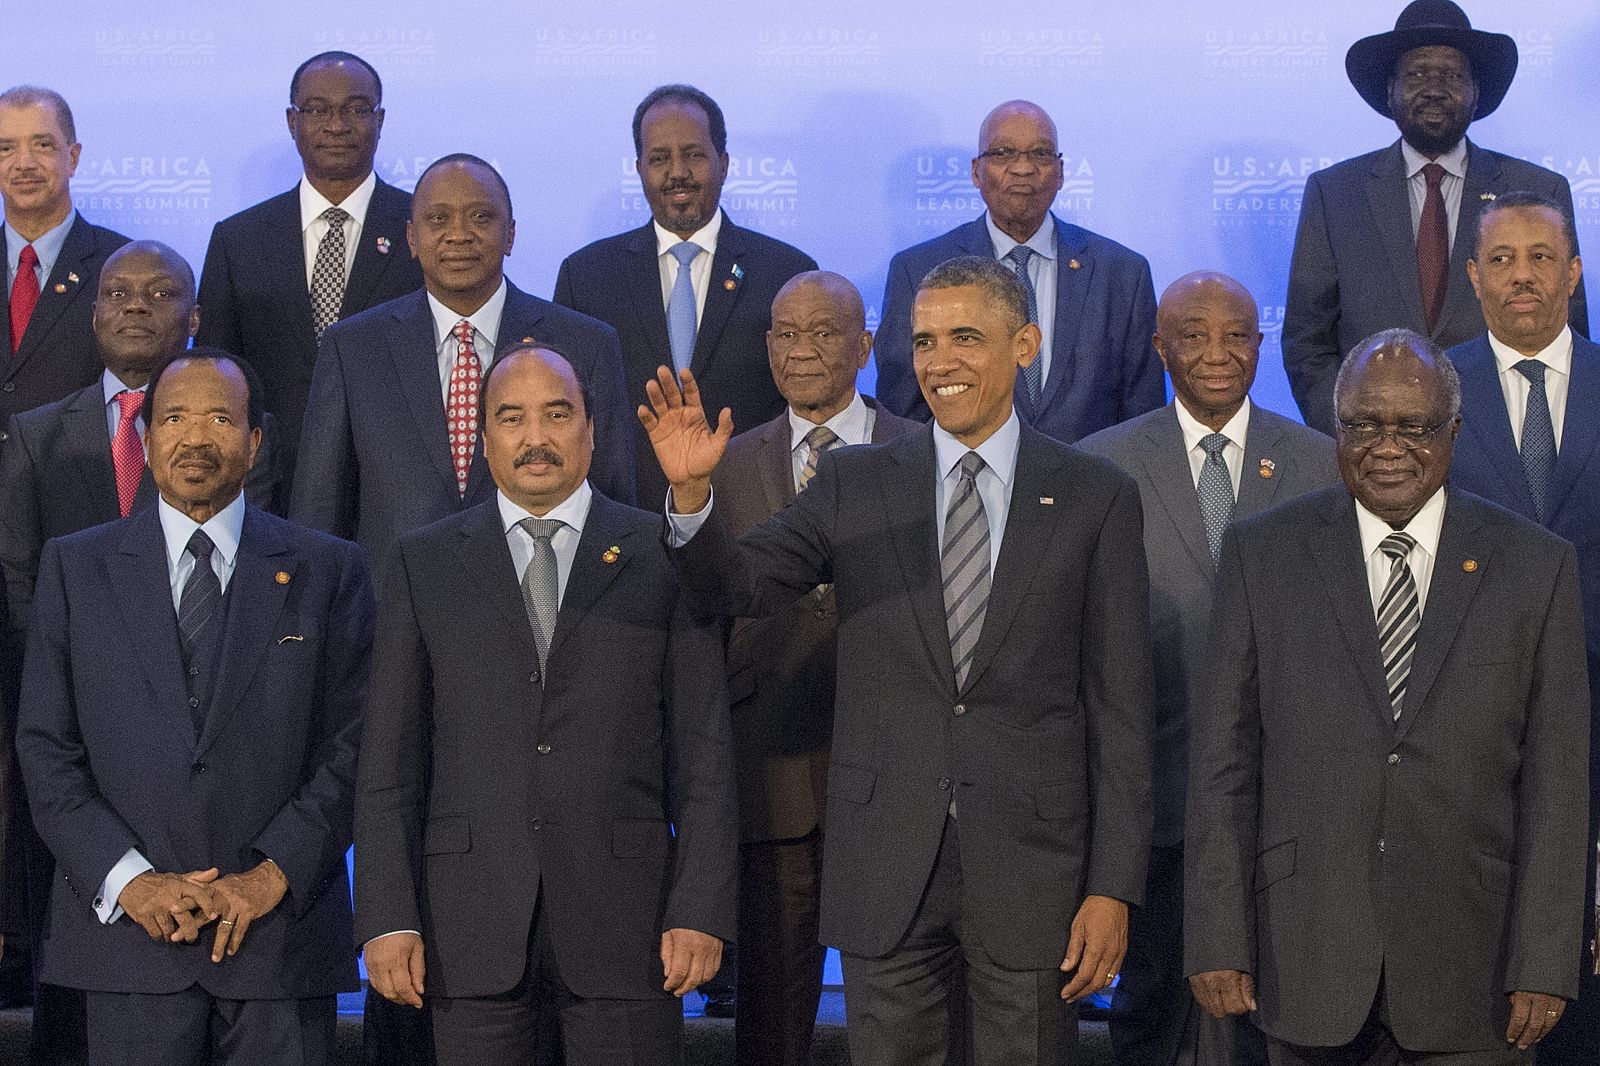 El presidente estadounidense Barack Obama  posa junto con los líderes africanos durante la Cumbre de Líderes de África celebrada en Washington.